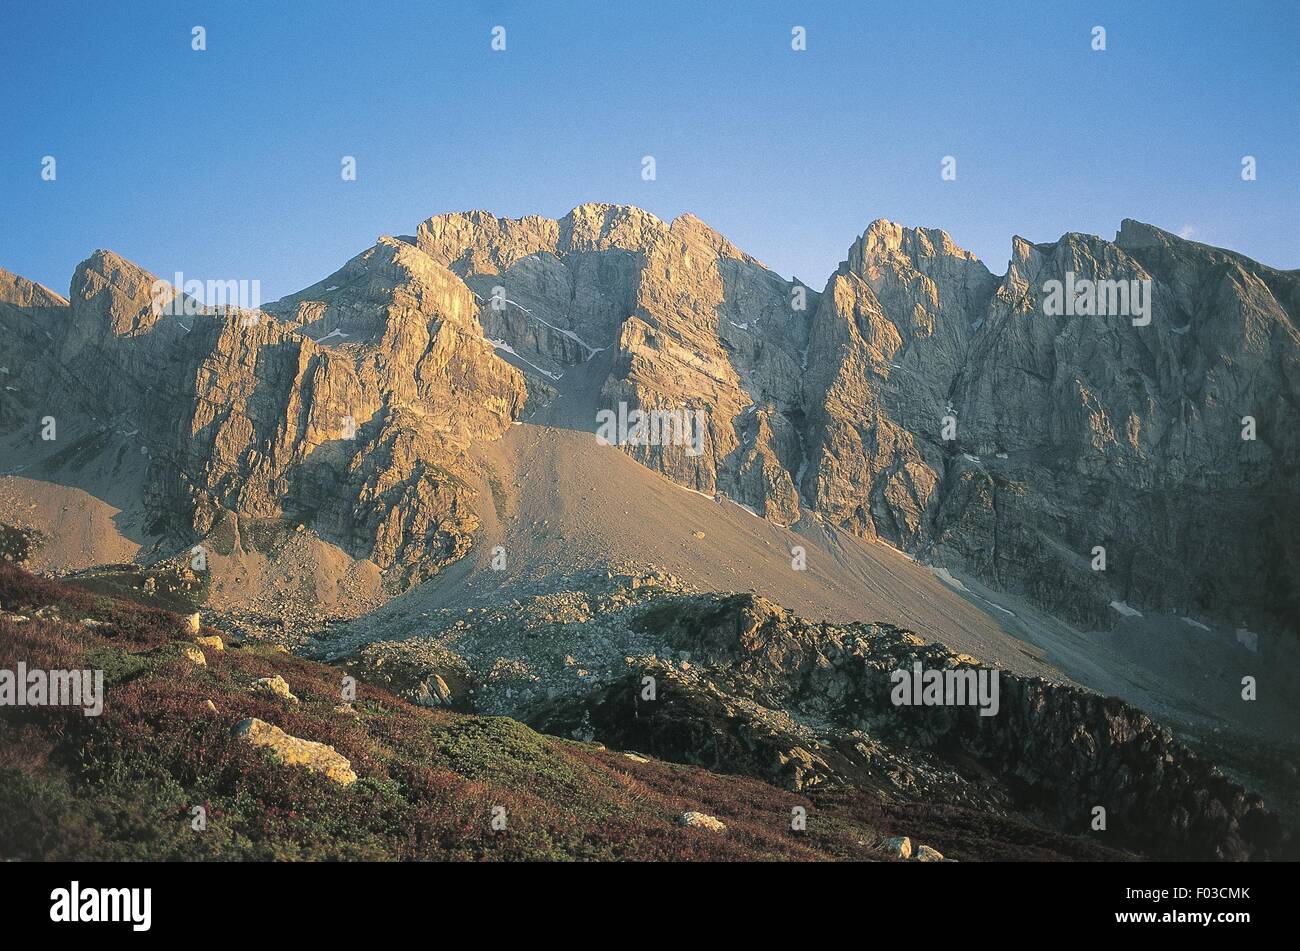 Italia - Piemonte - Alpi Marittime - Alta Valle Pesio Riserva Naturale -  Marguareis Peak Foto stock - Alamy